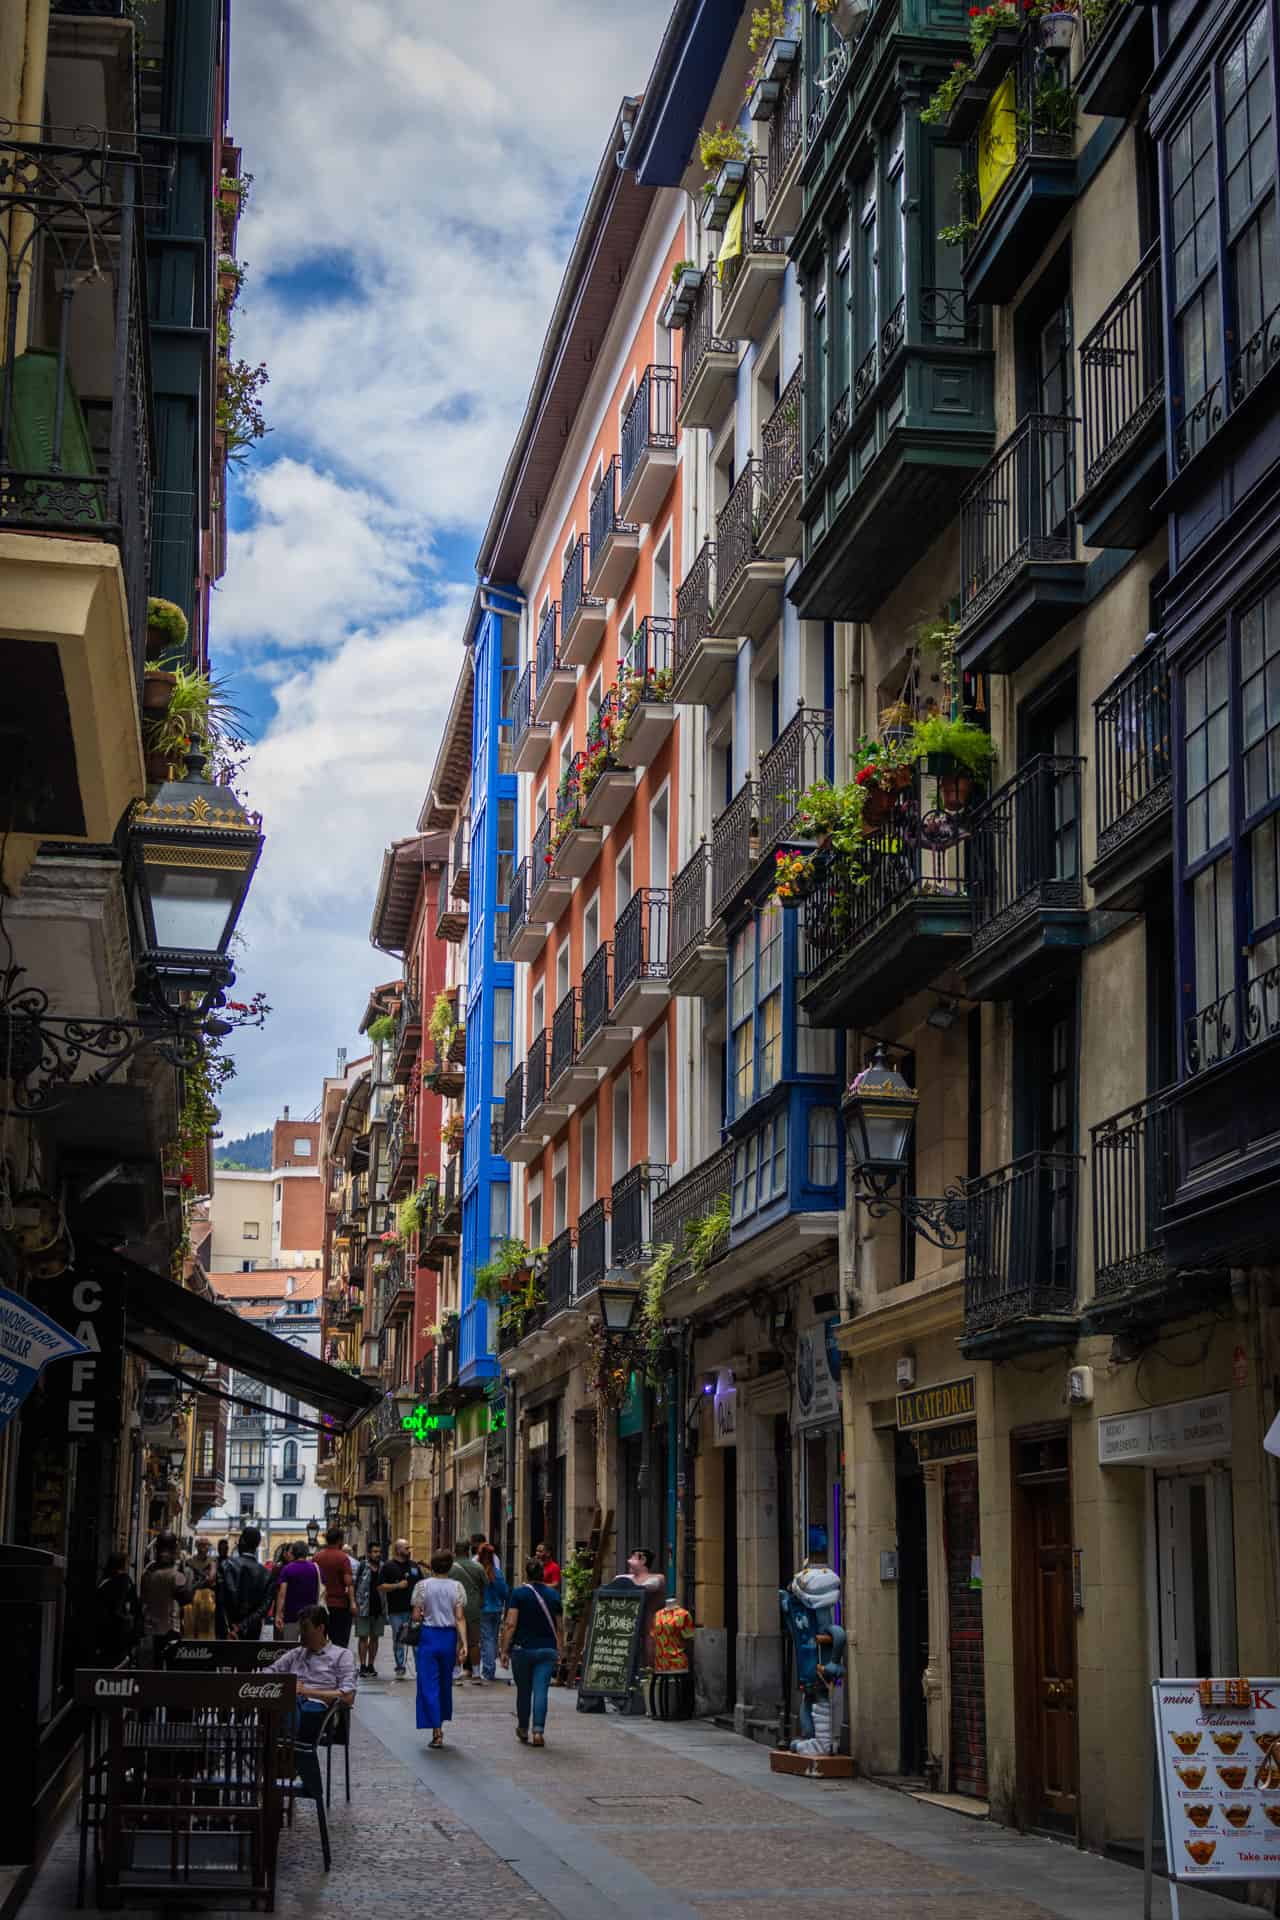 Een van de zeven straatjes van Bilbao, een leuke stop tijdens een roadtrip Noord-Spanje, met gekleurden hoge huizen en balkonnetjes